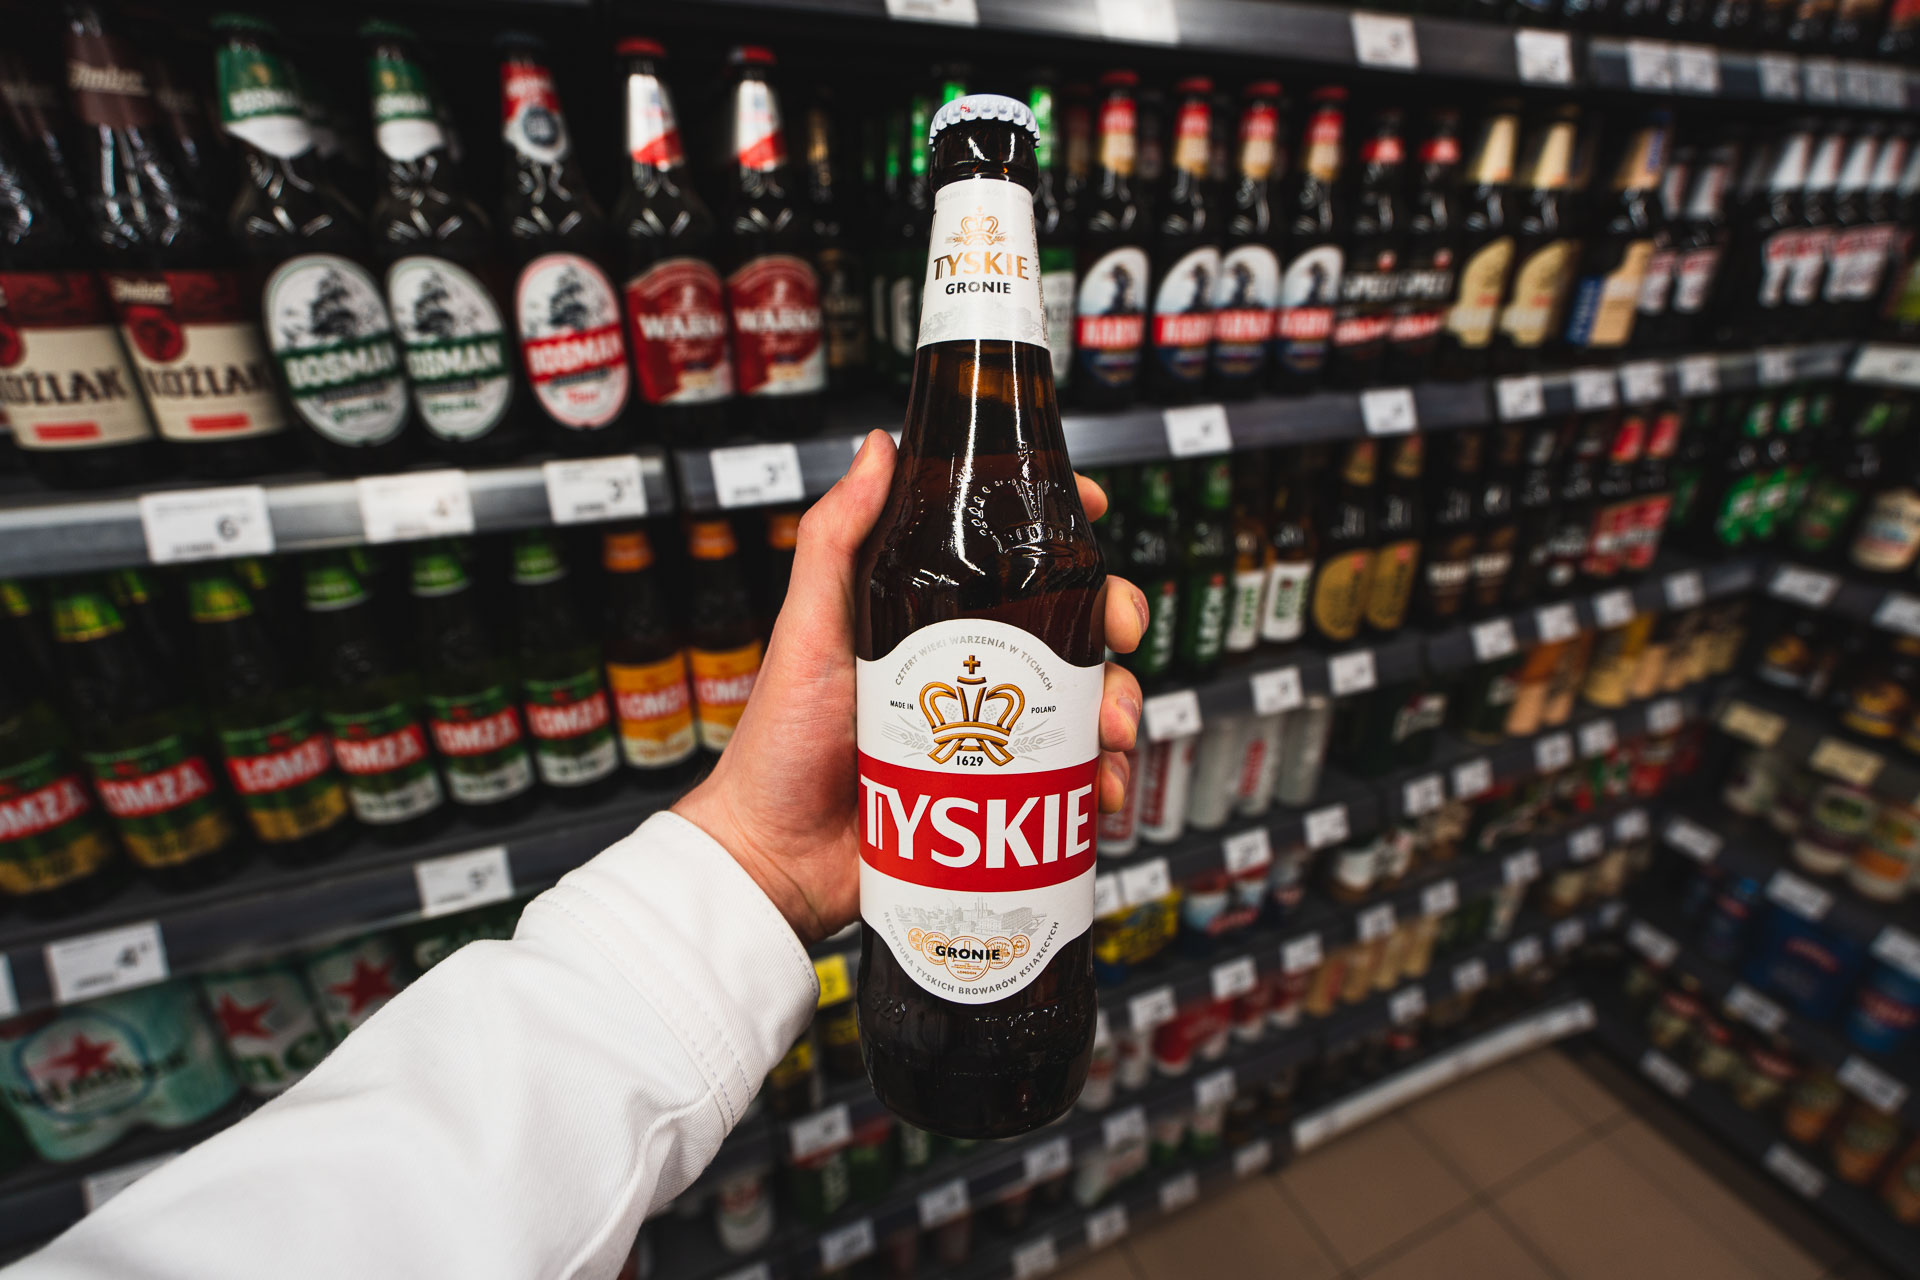 Tyskie beer in Poland